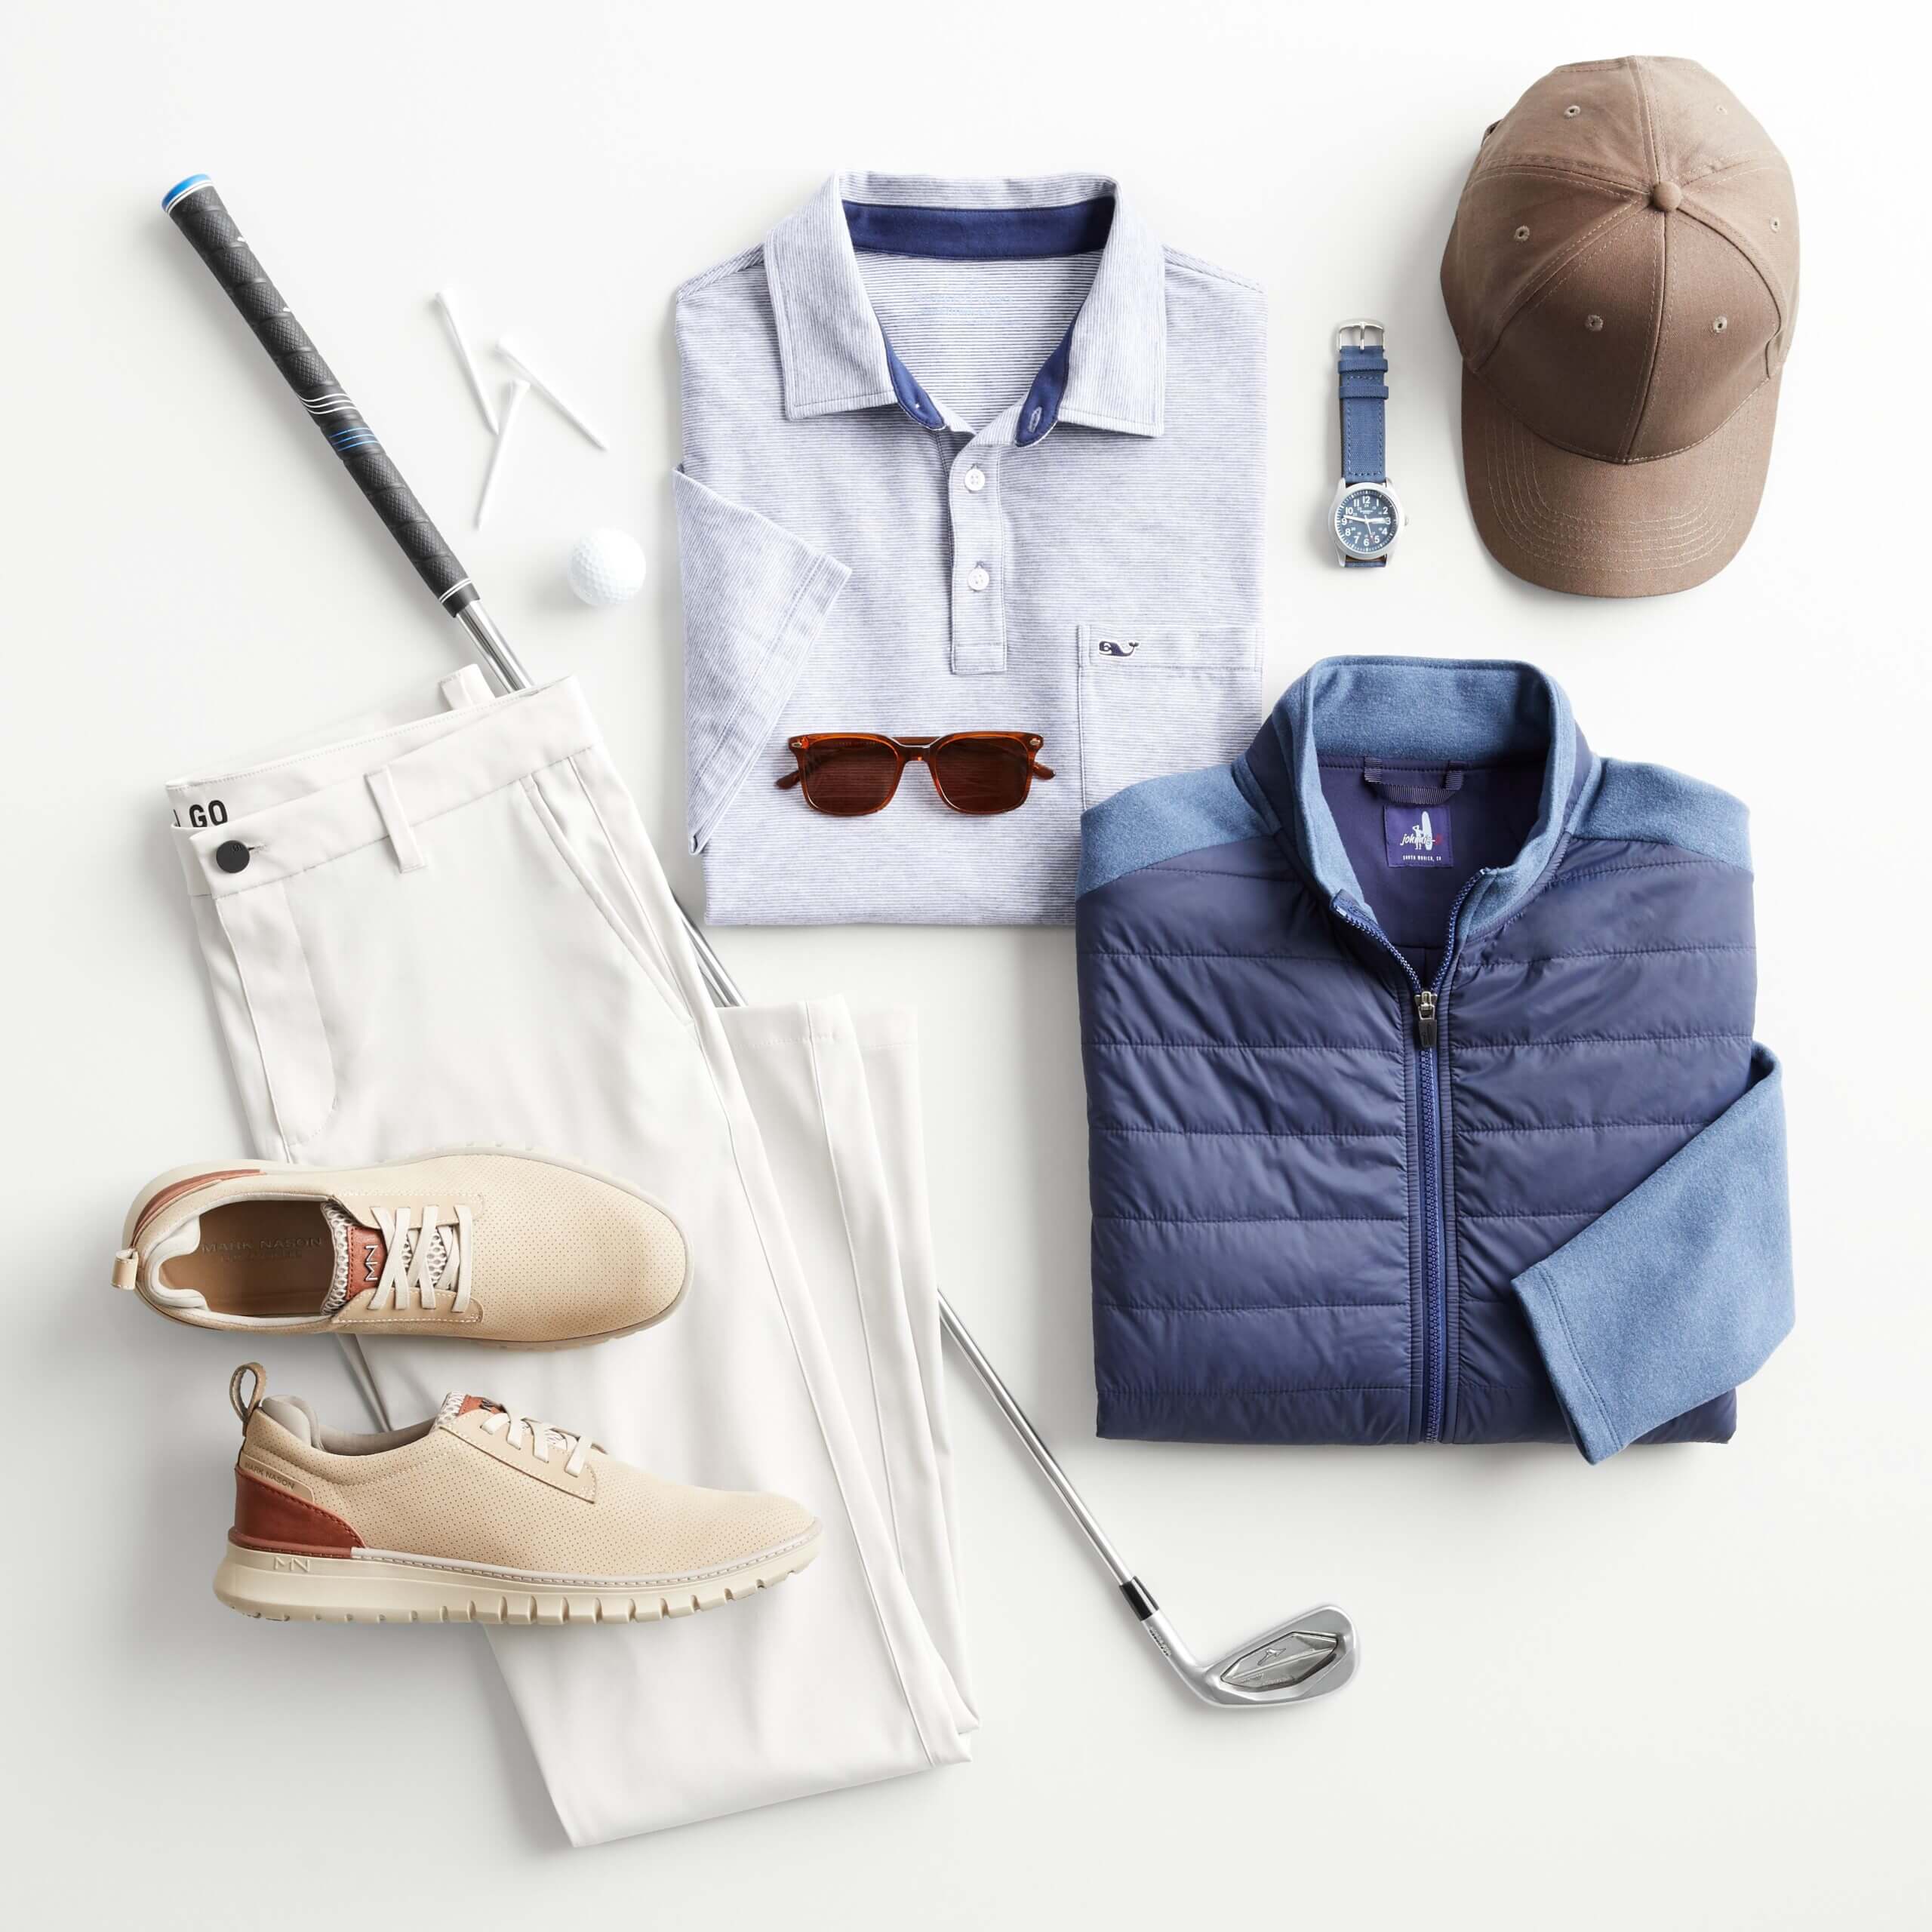 Golf Attire for Men | What to Wear Golfing | Stitch Fix